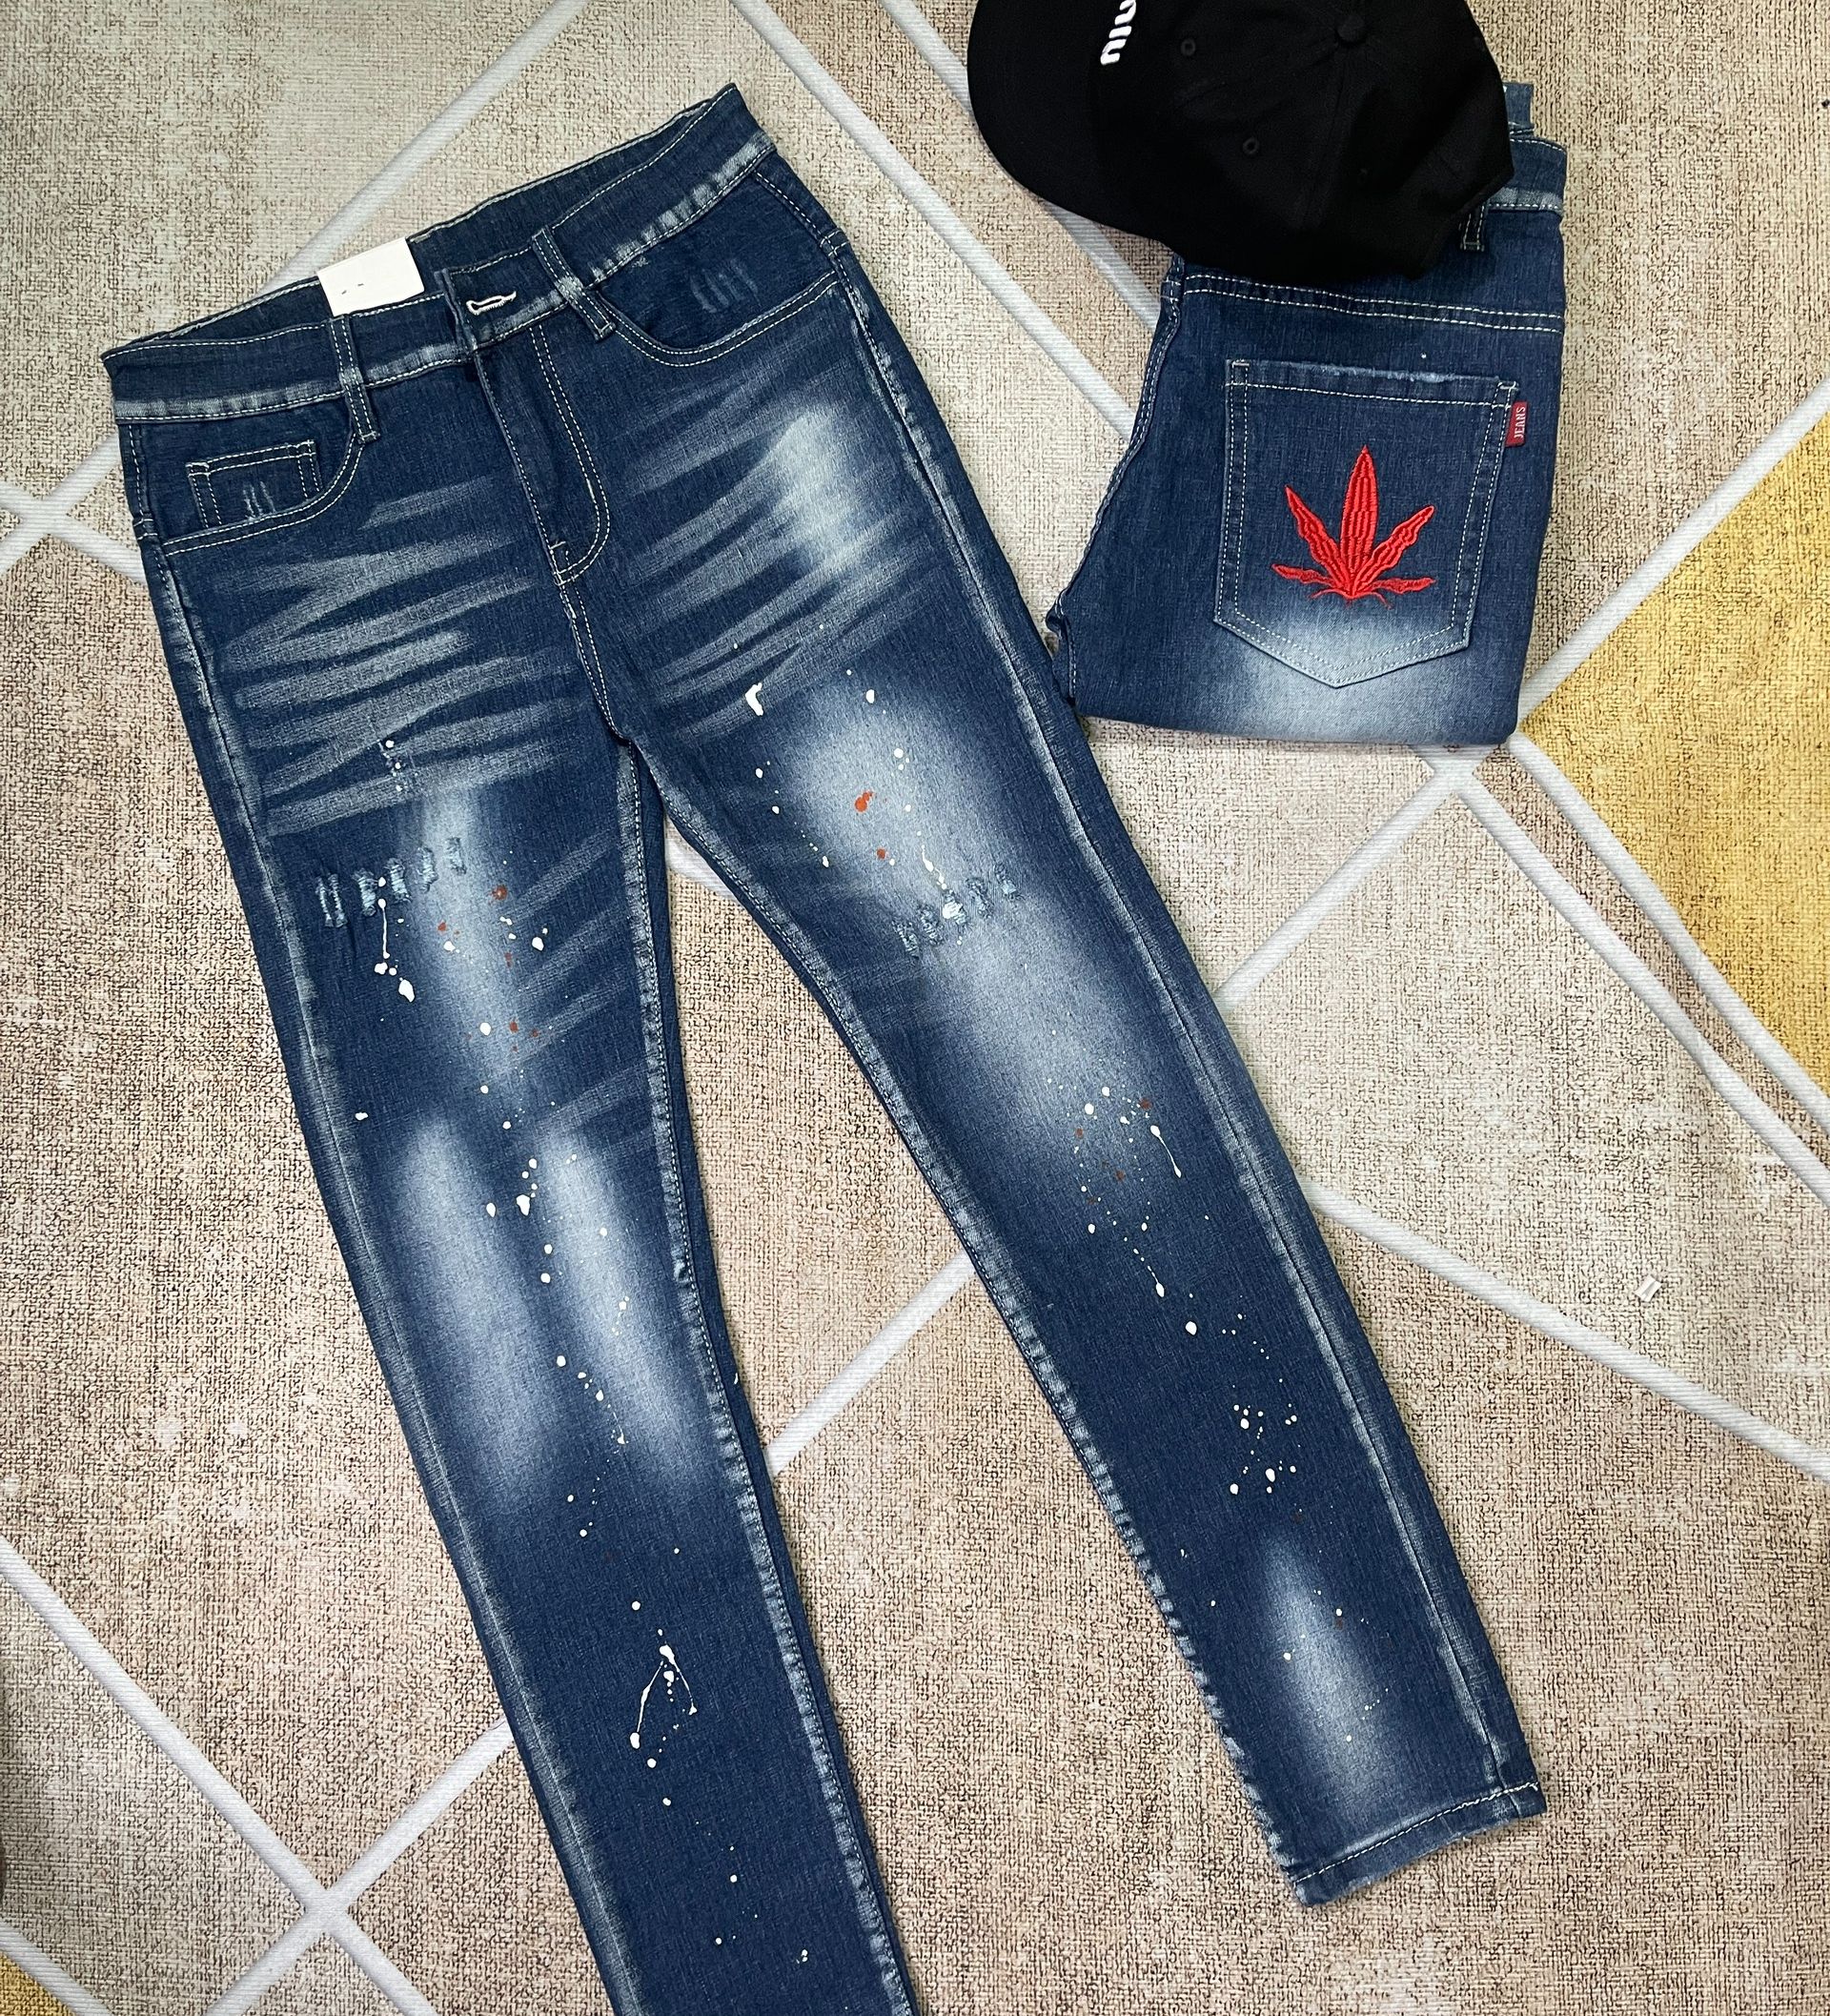 quần bò jean nam dài xanh rách vẩy sơn thêm lá phong đỏ may mắn đẹp,chất jean dày co giãn tốt chuẩn form